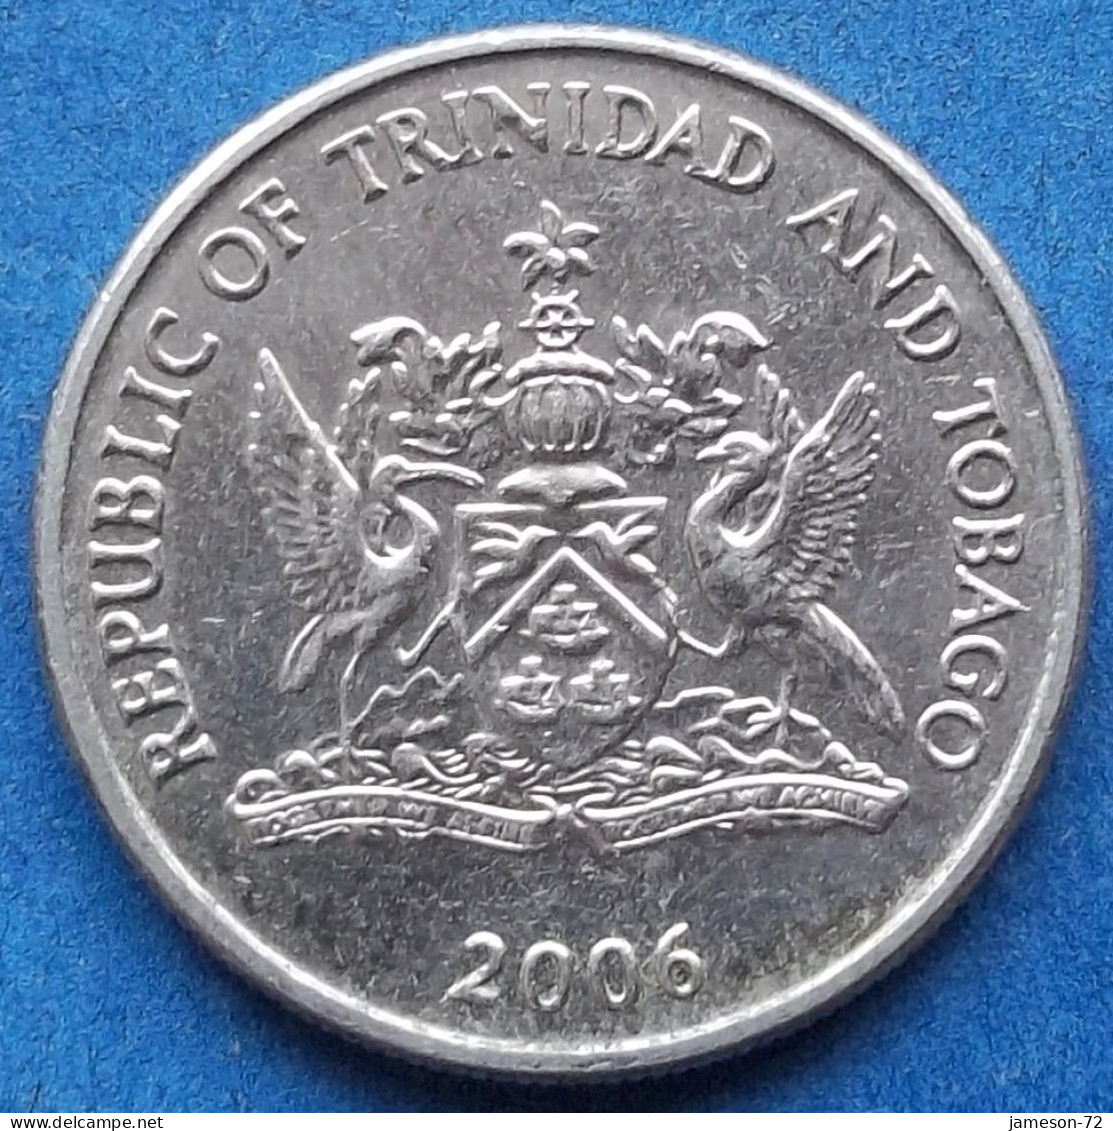 TRINIDAD & TOBAGO - 25 Cents 2006 "Chaconia" KM# 32 Republic (1976) - Edelweiss Coins - Trinidad & Tobago